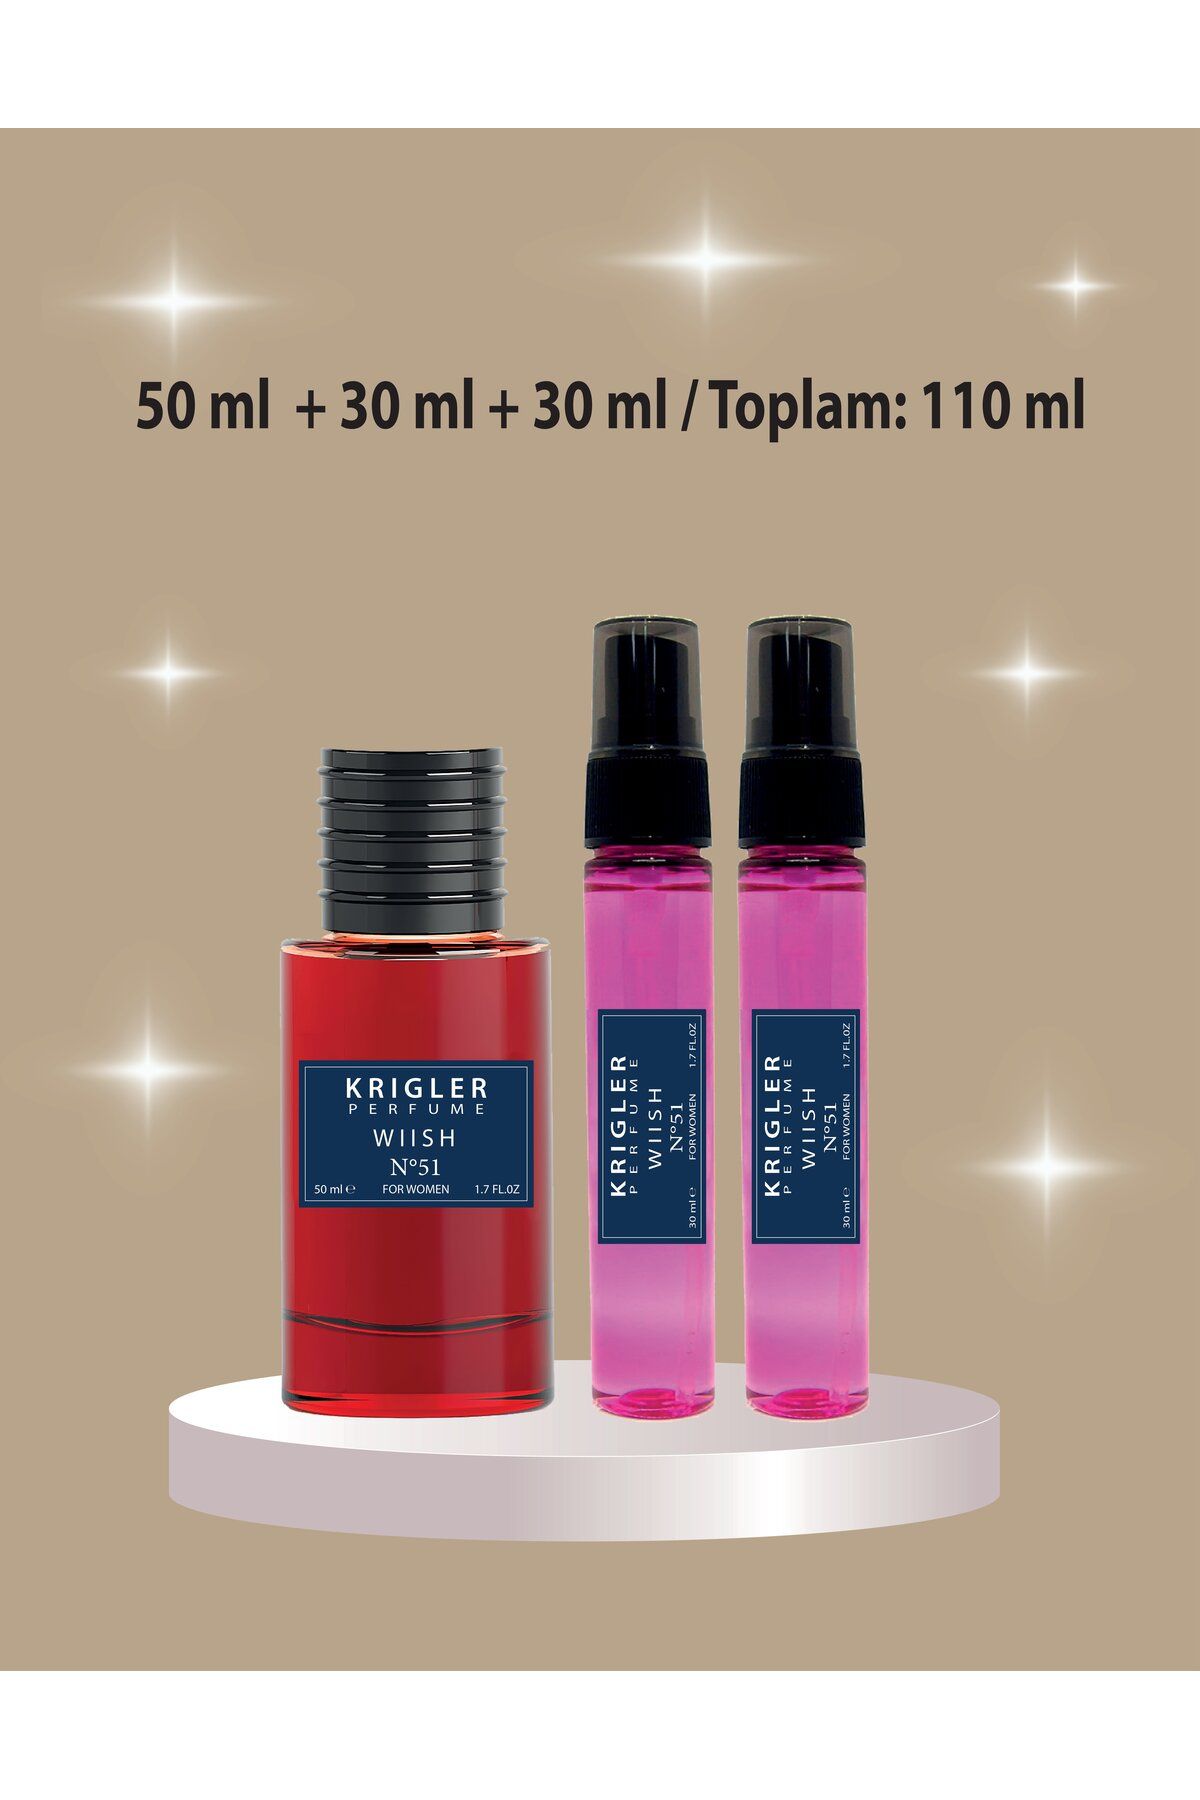 Krigler Wish Kadın Parfüm 110 ml